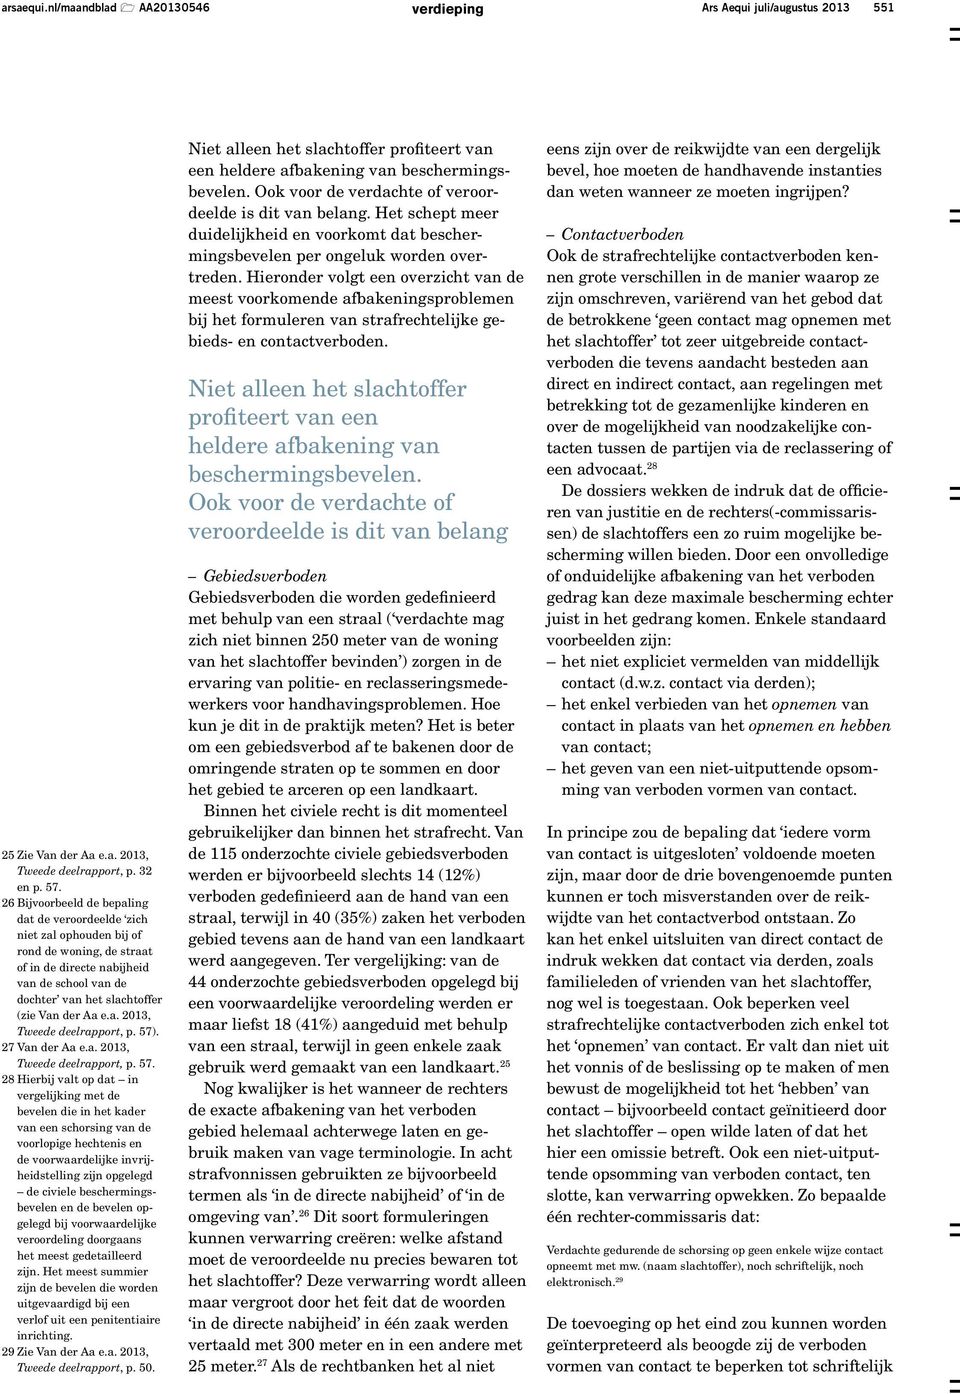 57). 27 Van der Aa e.a. 2013, Tweede deelrapport, p. 57.